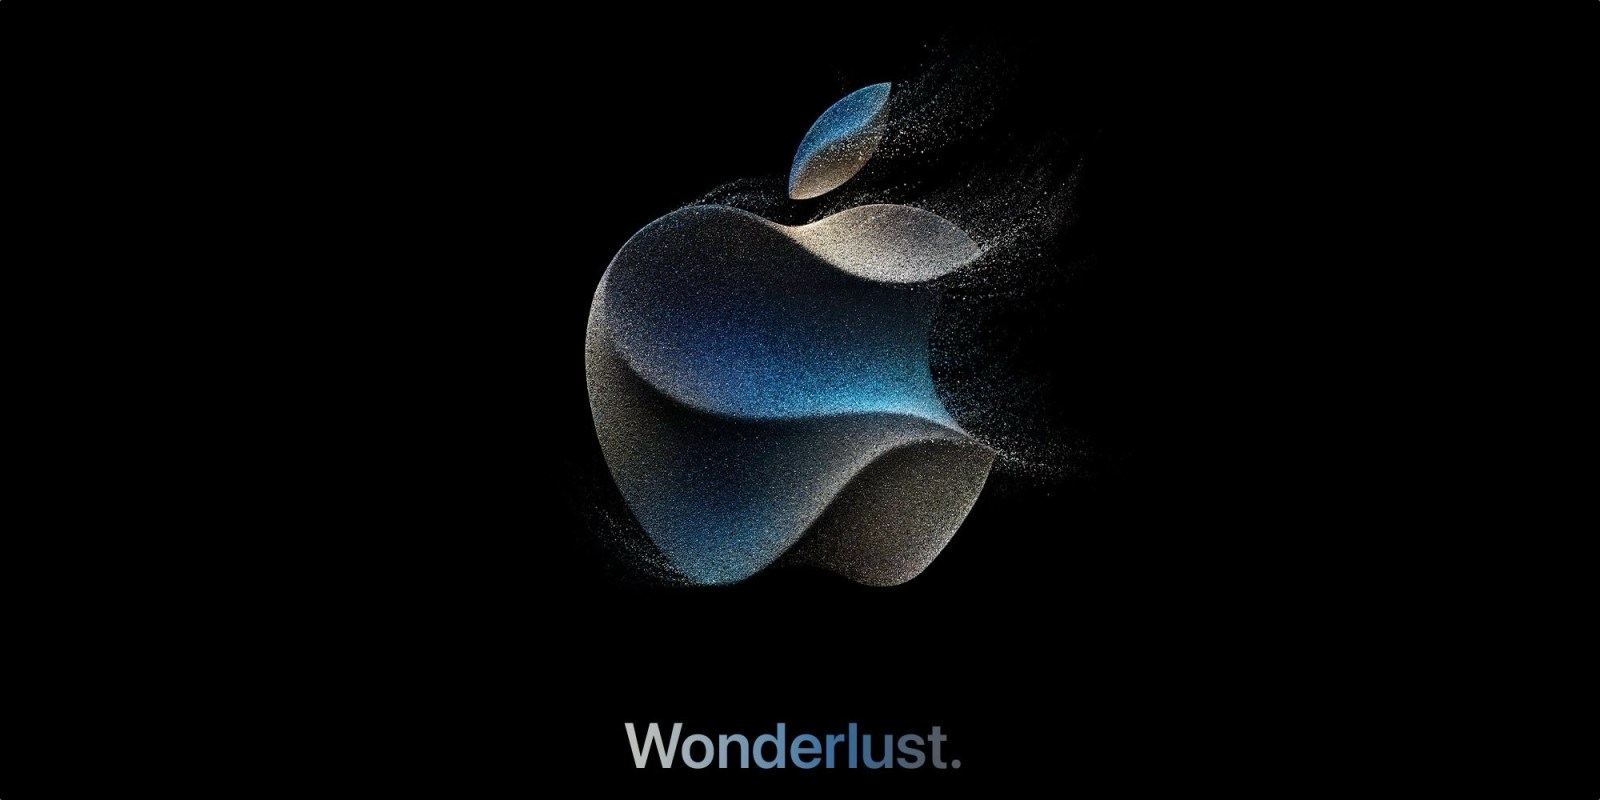 Apple Wonderlust event